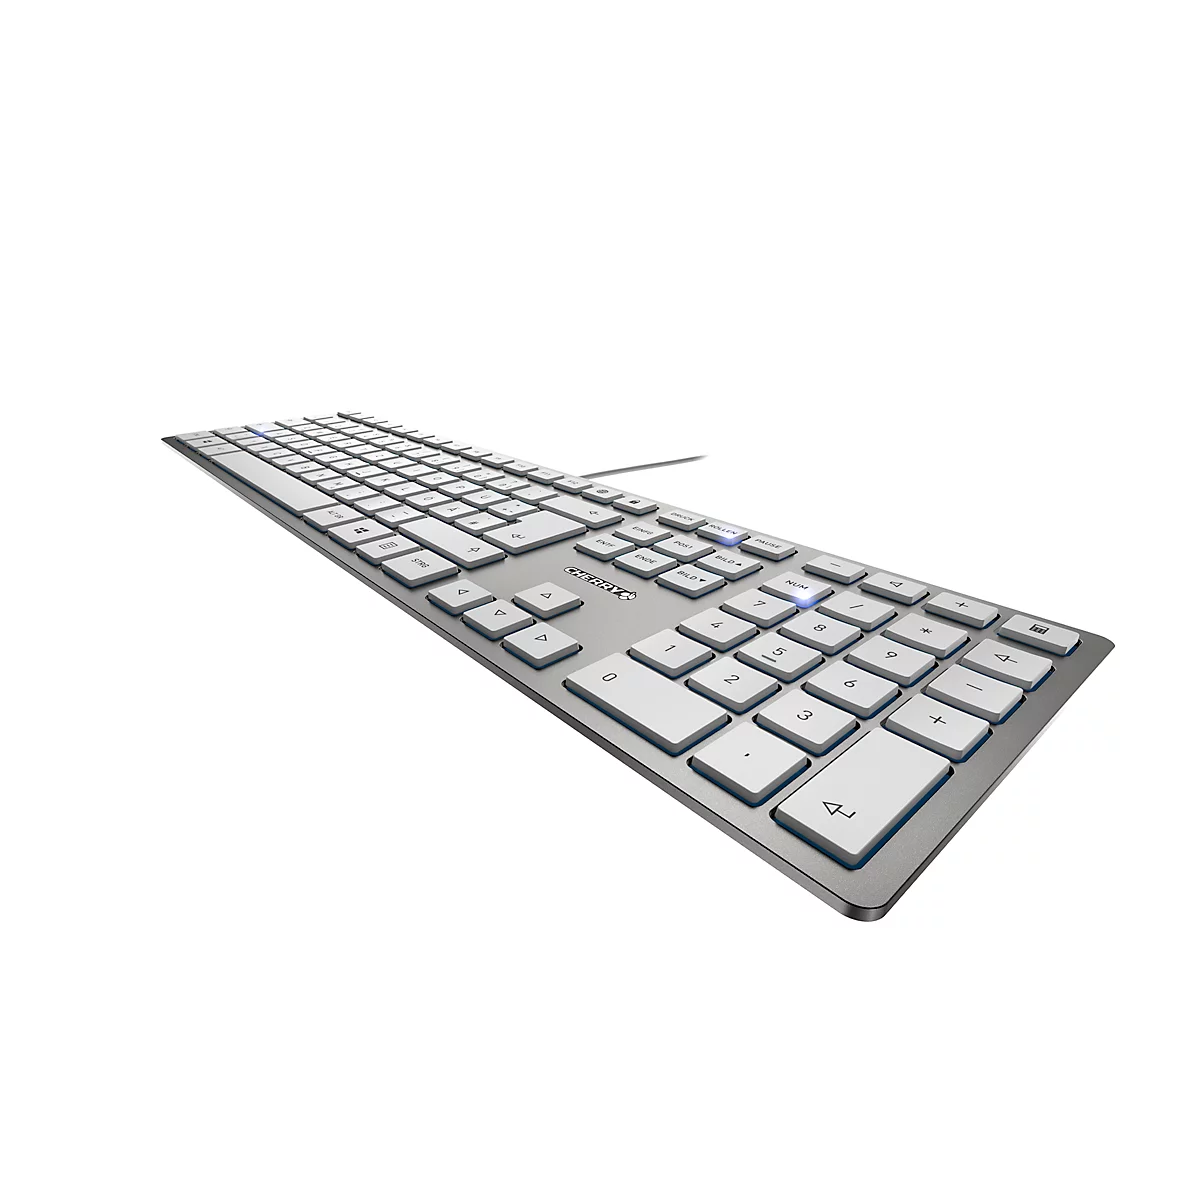 Cherry Tastatur KC 6000 Slim, QWERTZ, 105 + 6 Tasten, Status LEDs für CAPS LOCK, NUM & SCROLL, silbern